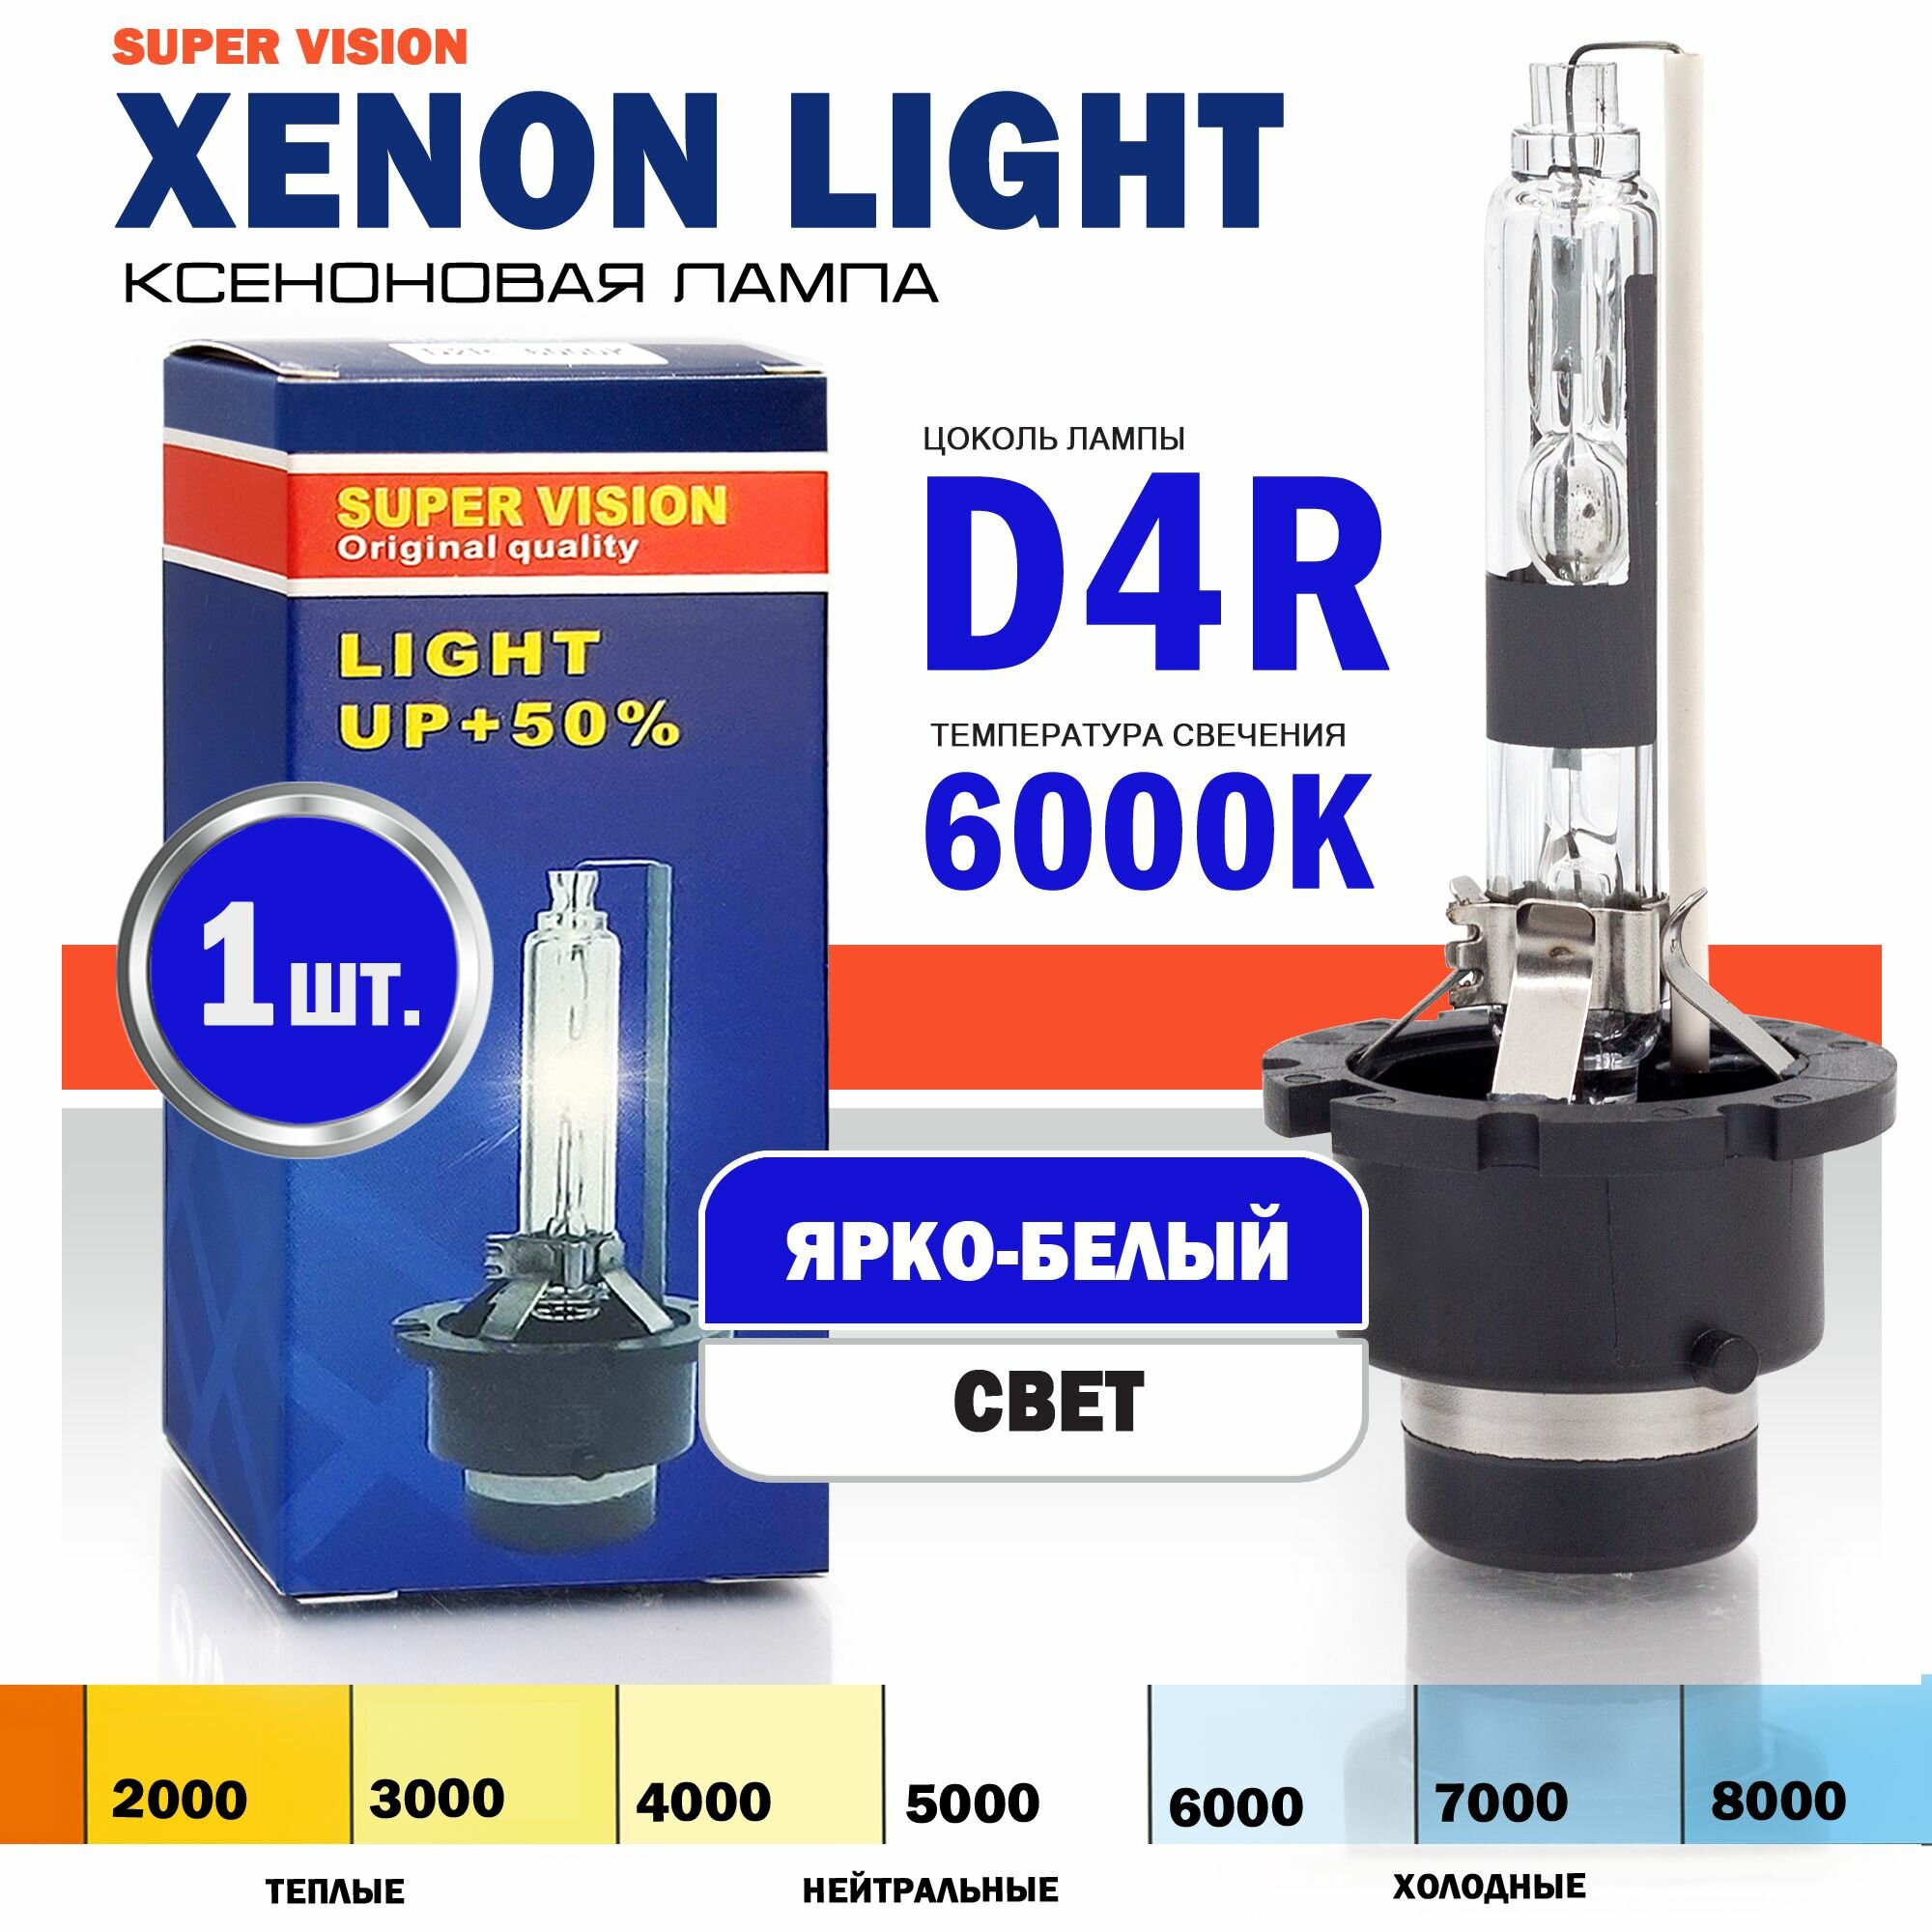 Ксеноновая лампа Xenon Light D4R 6000K Super Vision для автомобиля штатный ксенон, питание 12V, мощность 35W, 1 штука